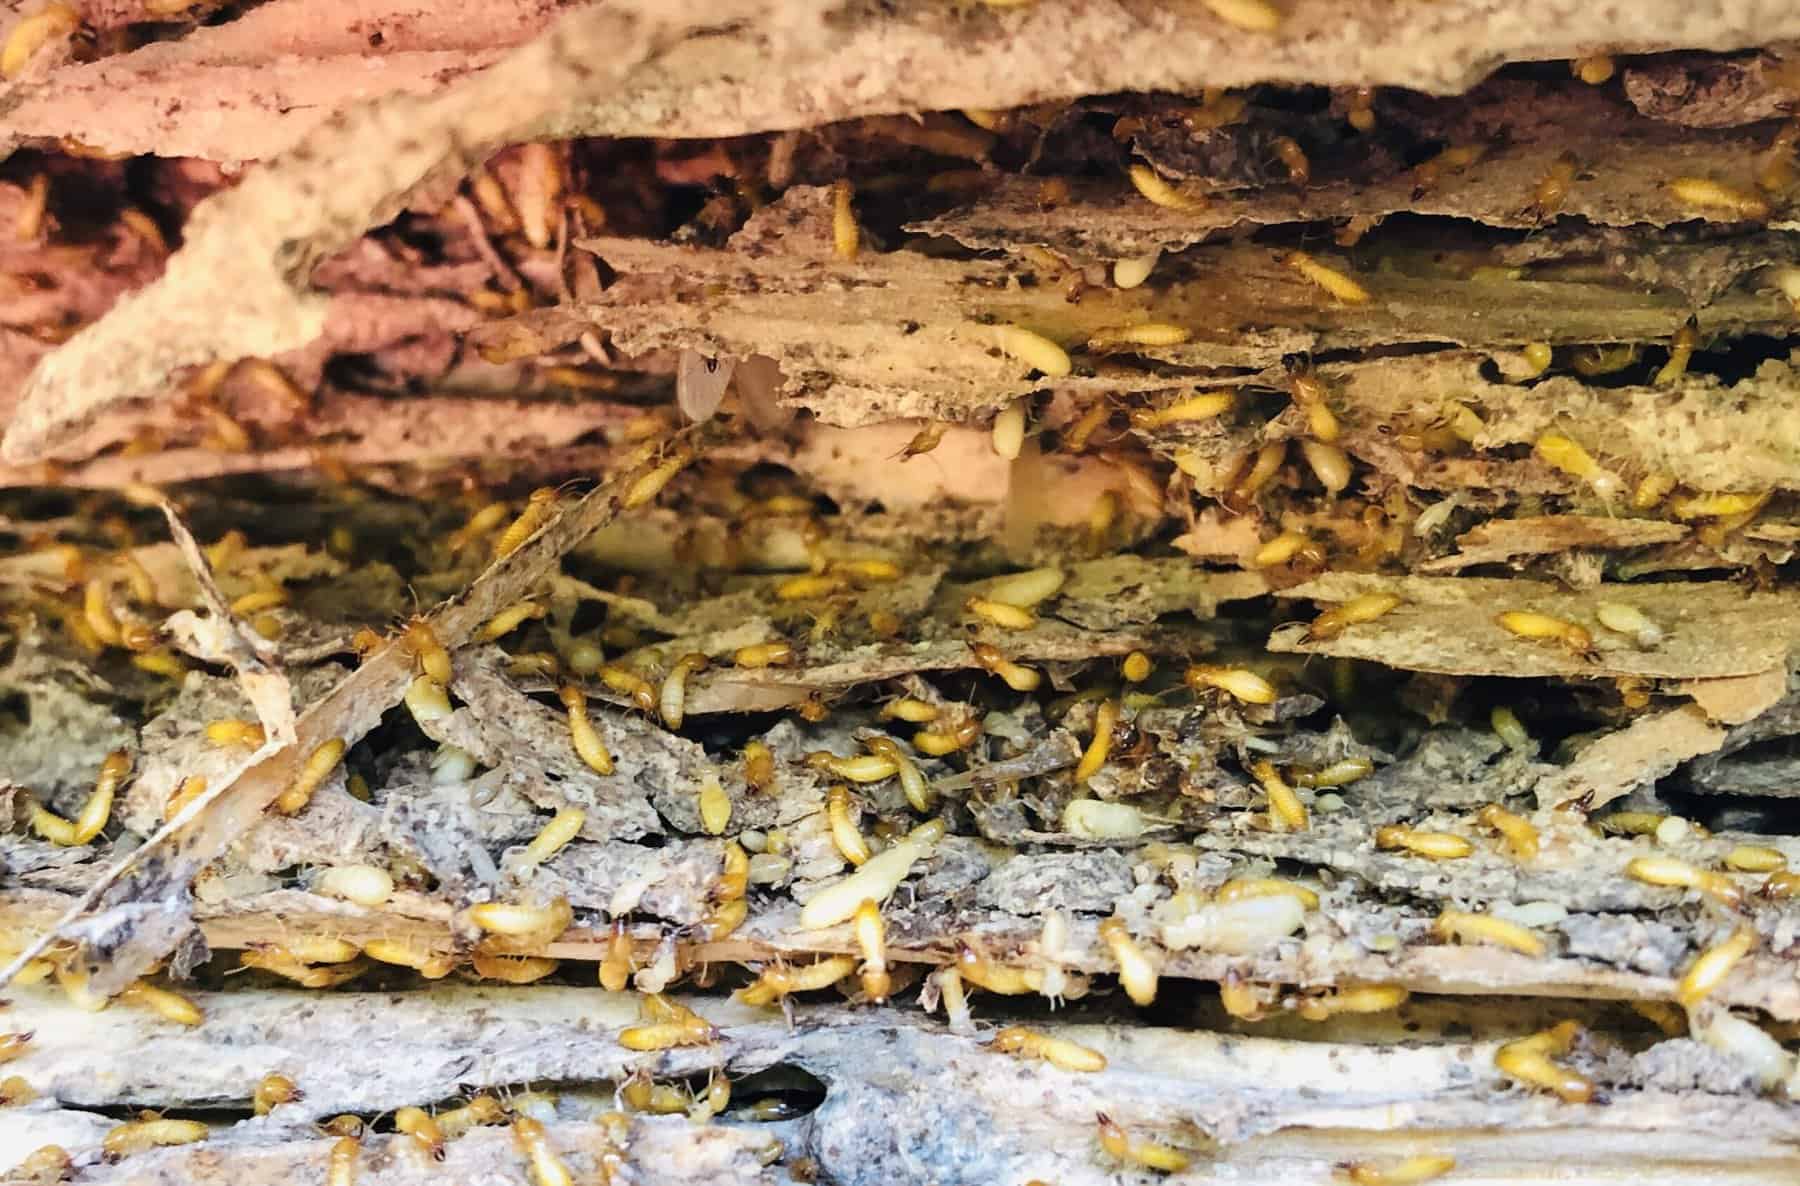 subterranean-termites-working-2022-11-02-04-09-48-utc (1)